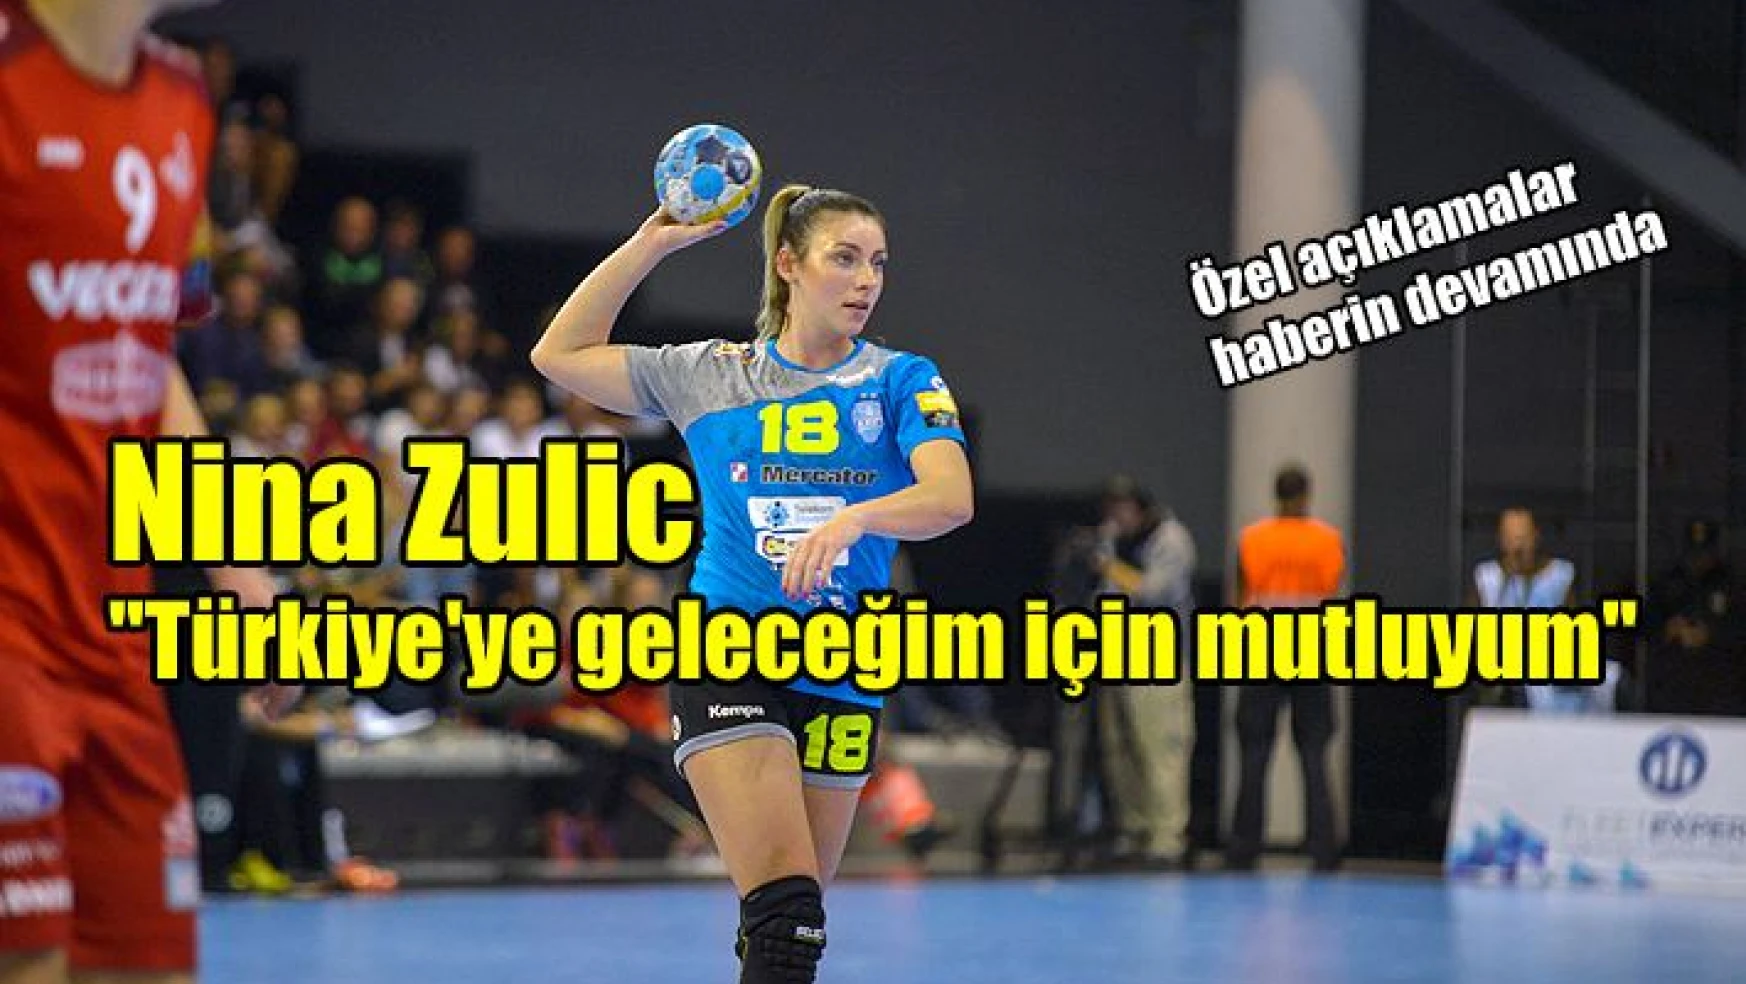 Nina Zulic: “Türkiye’ye geleceğim için mutluyum” (video)